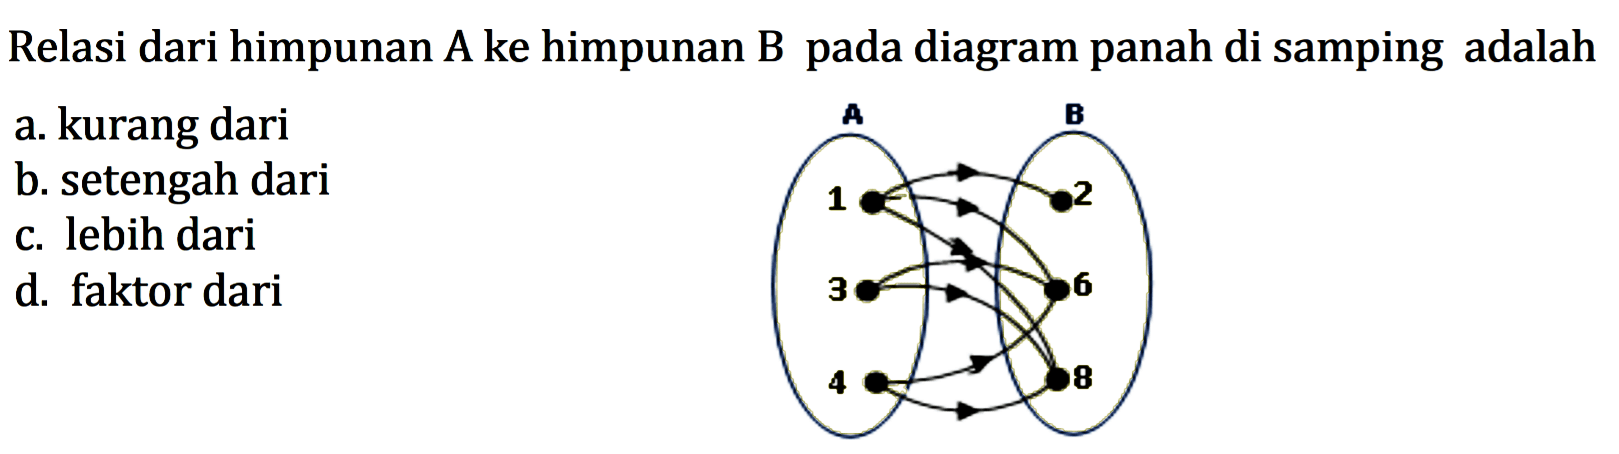 Relasi dari himpunan A ke himpunan B pada diagram panah di samping adalah,,, A 1 3 4 B 2 6 8 a. kurang dari b. setengah dari c. lebih dari d. faktor dari